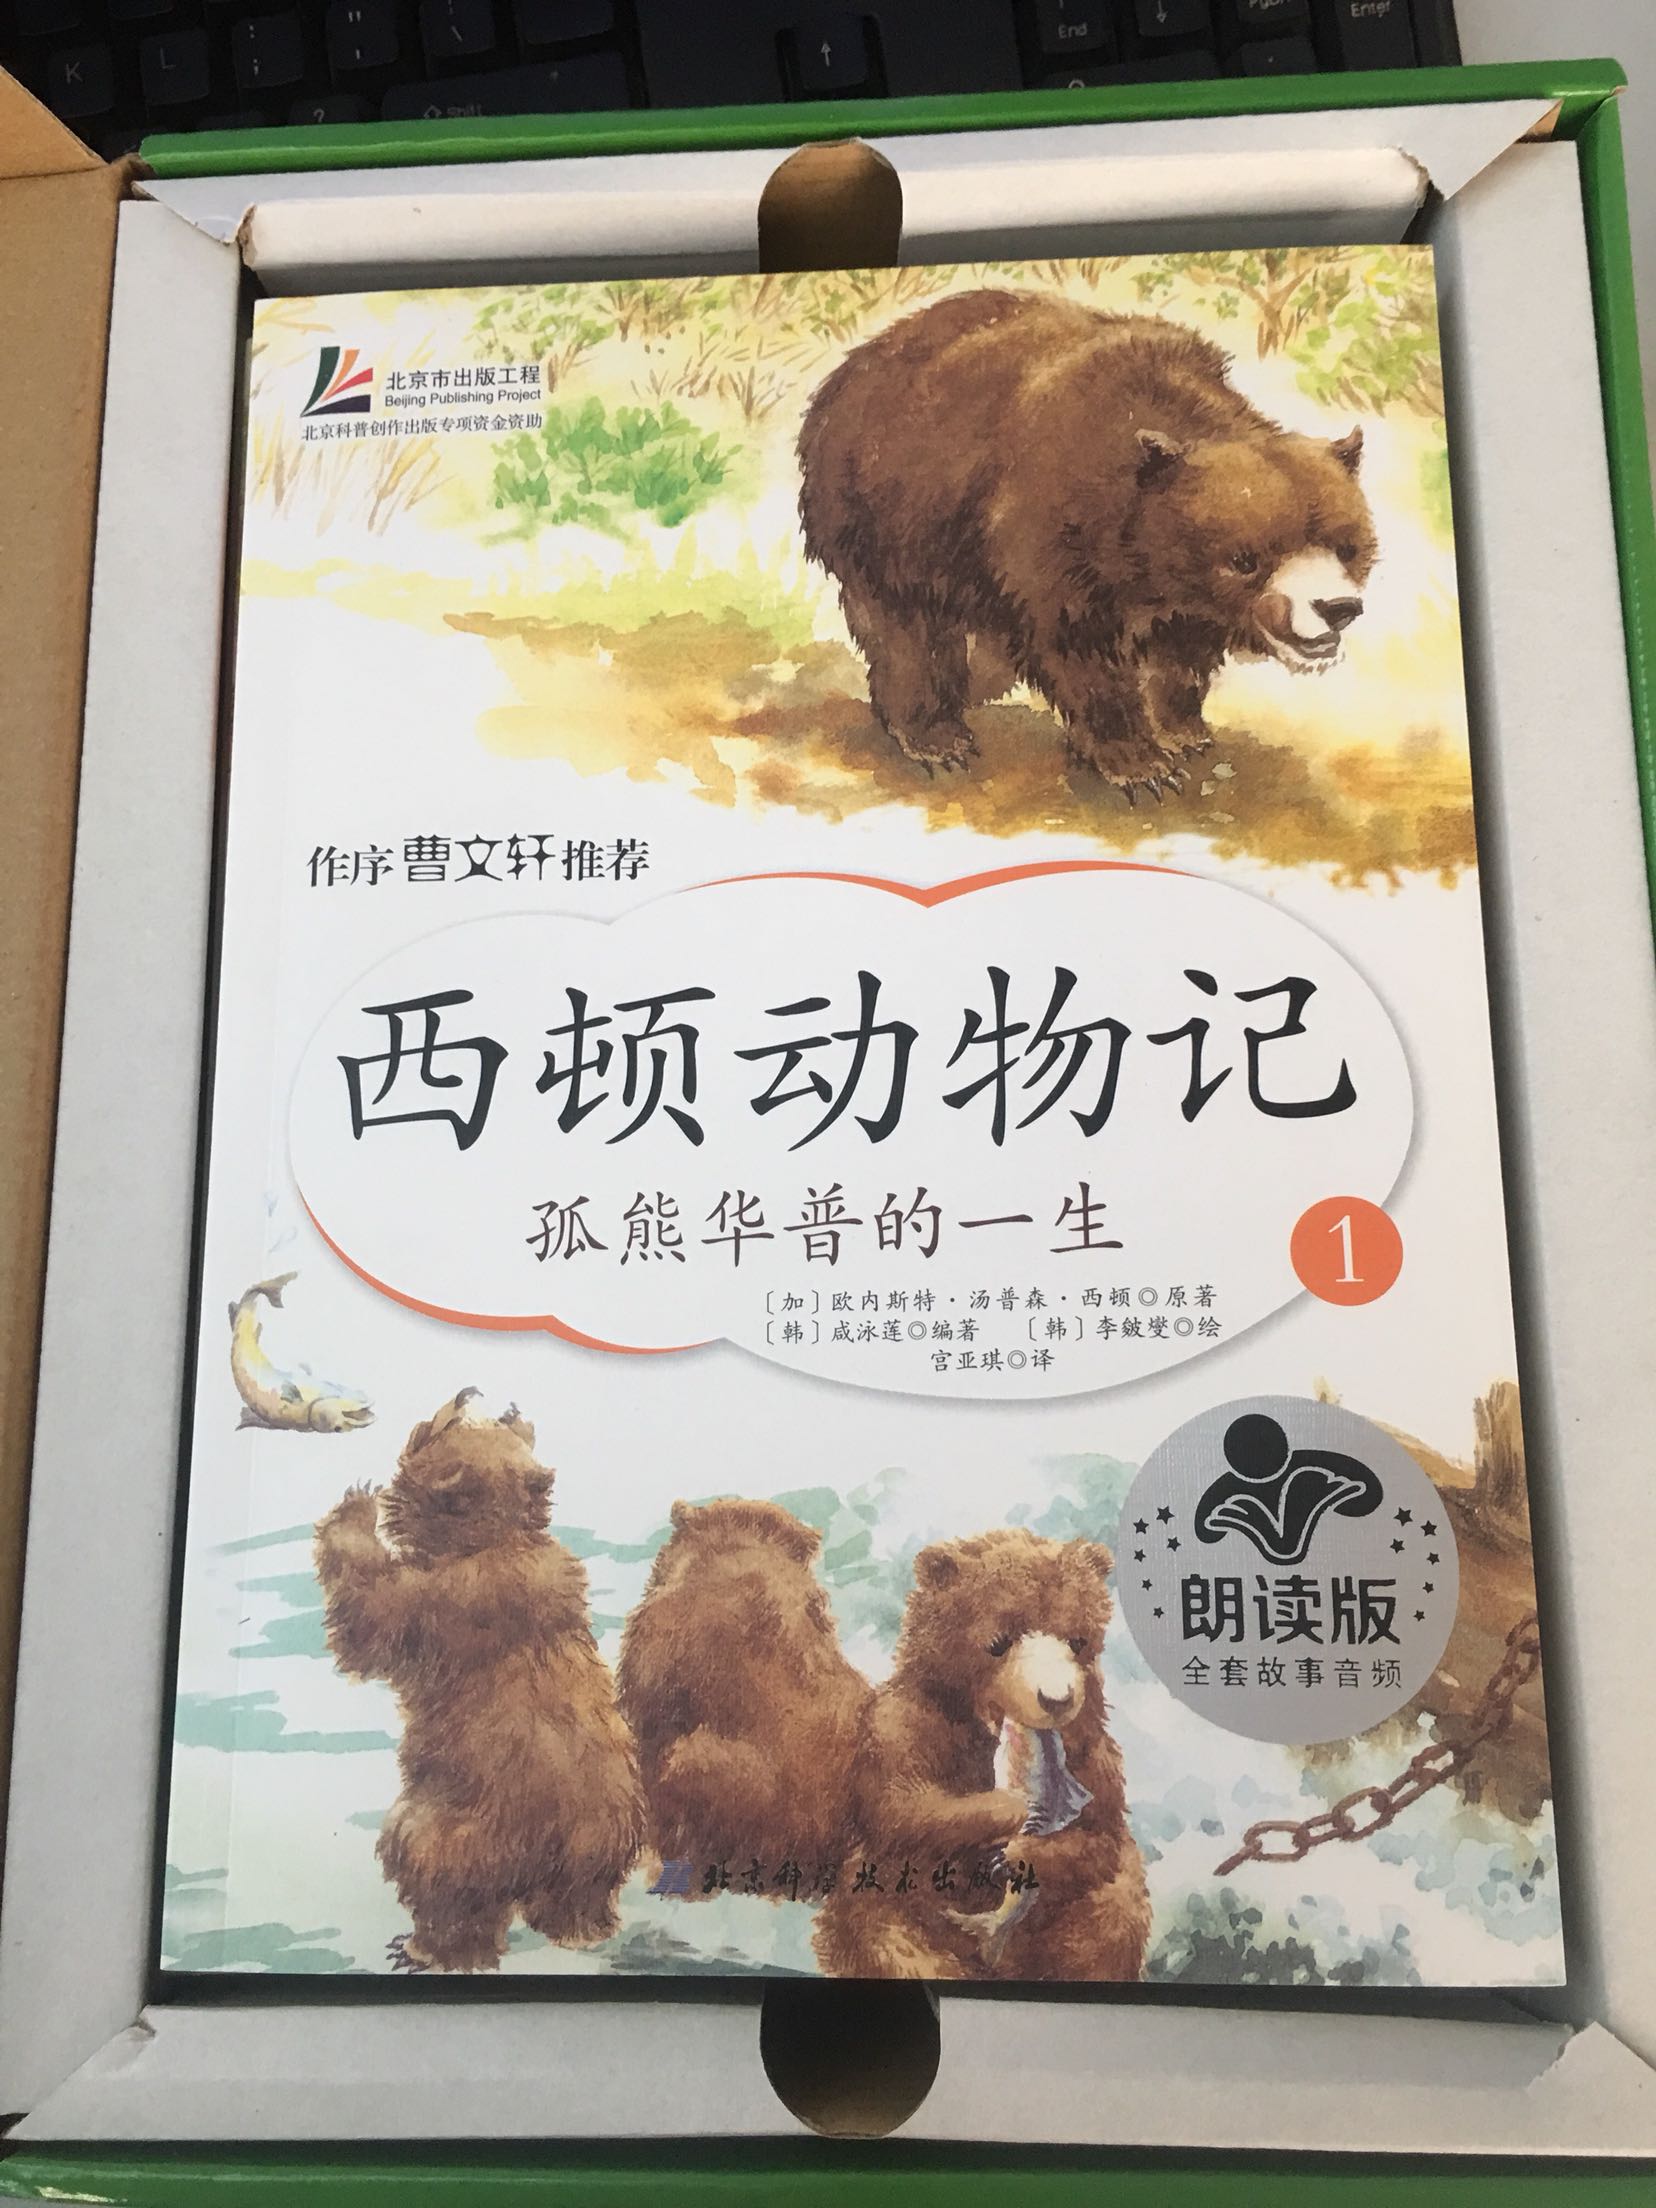 比较了很久，选了北京科技出版社的这套，文字优美，图文并茂，孩子很喜欢。